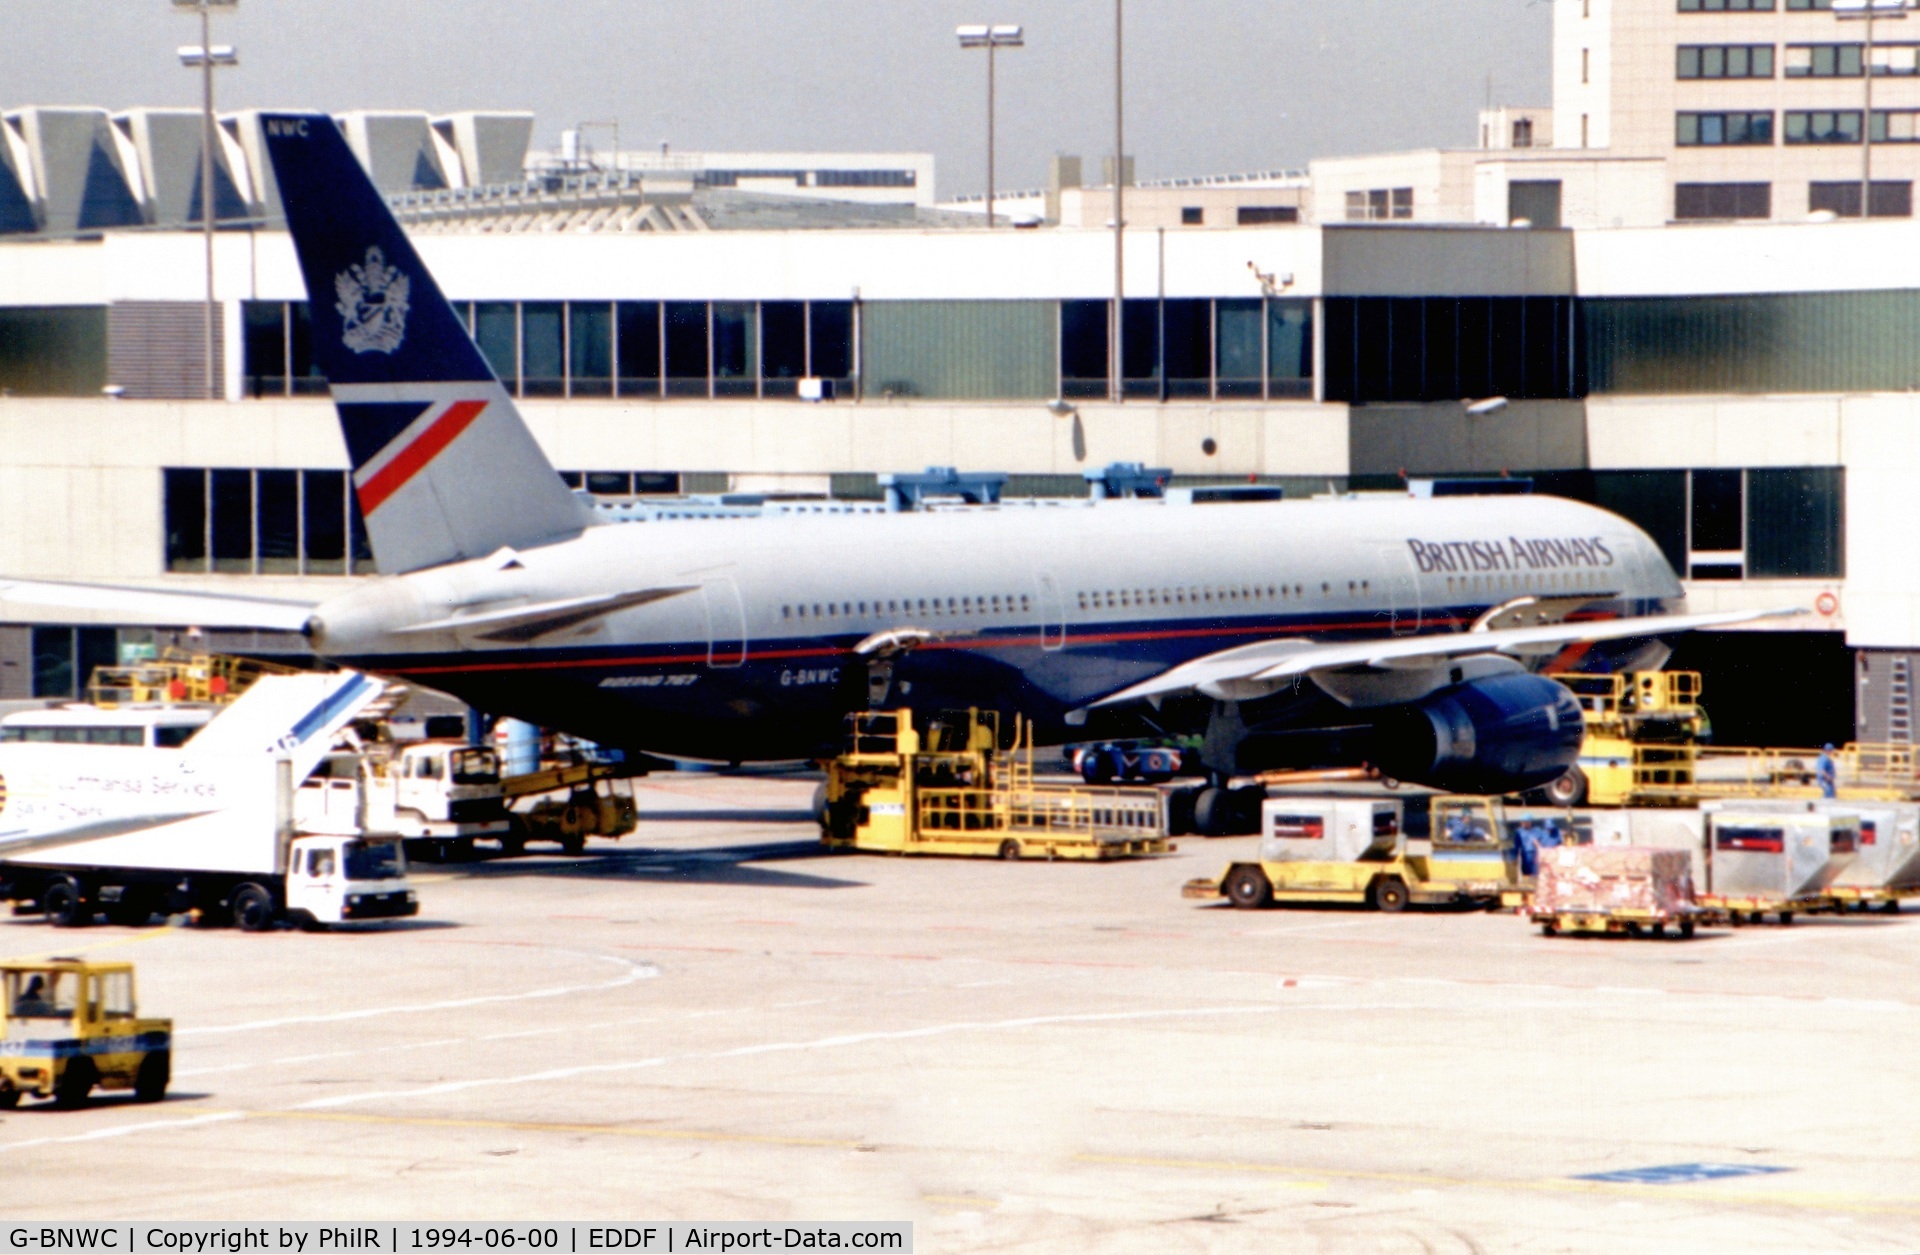 G-BNWC, 1989 Boeing 767-336 C/N 24335, G-BNWC 1989 B767-300 BA FRA